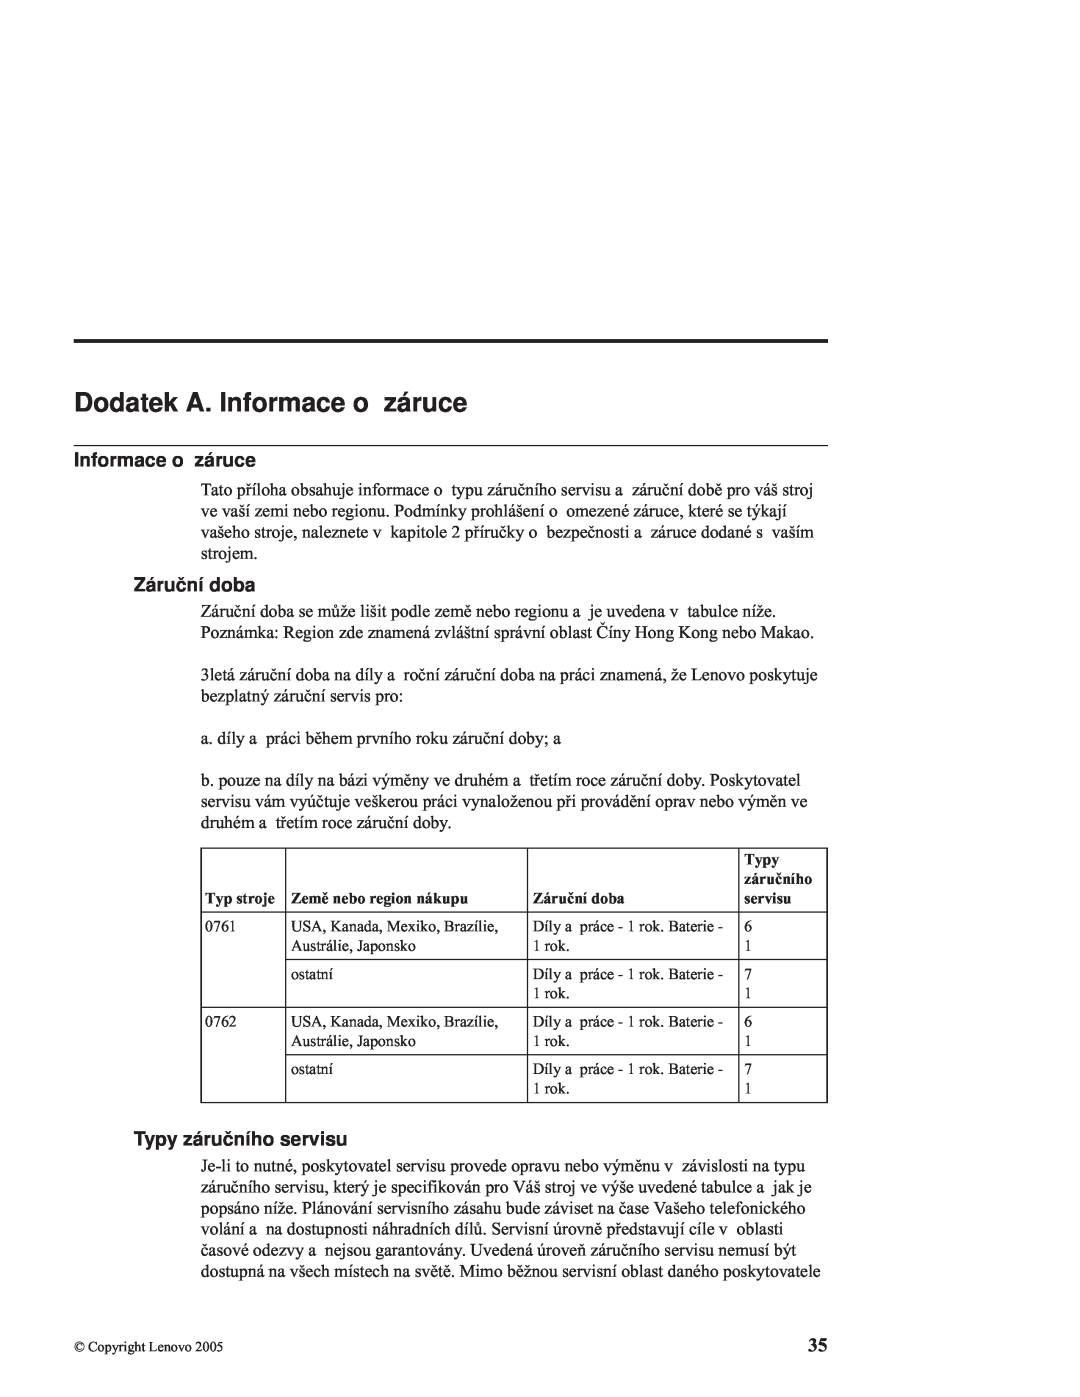 Lenovo C100 manual Dodatek A. Informace o záruce, Záruční doba, Typy záručního servisu 